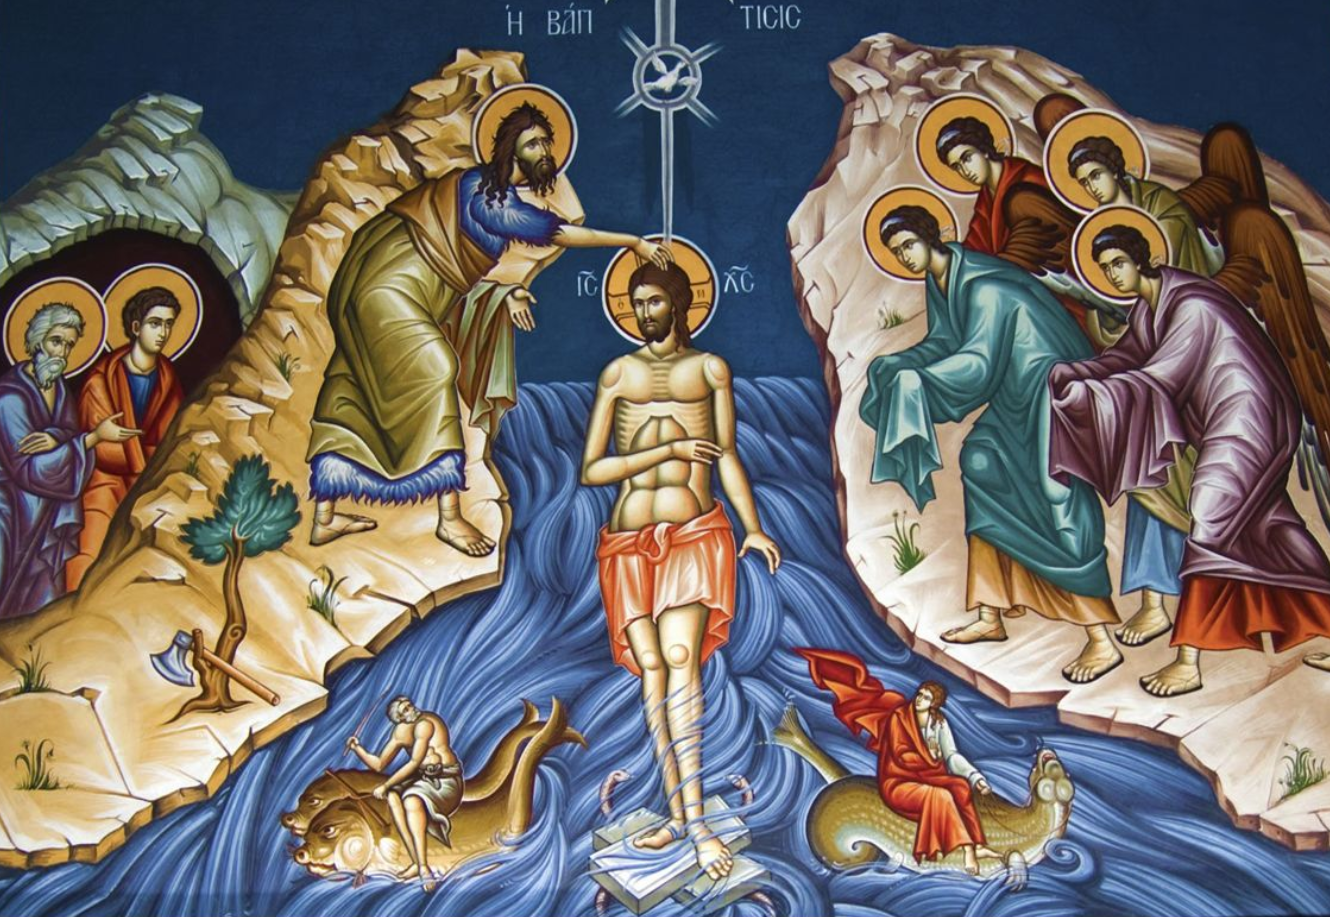 Празднуем Крещение Господне по Юлианскому календарю